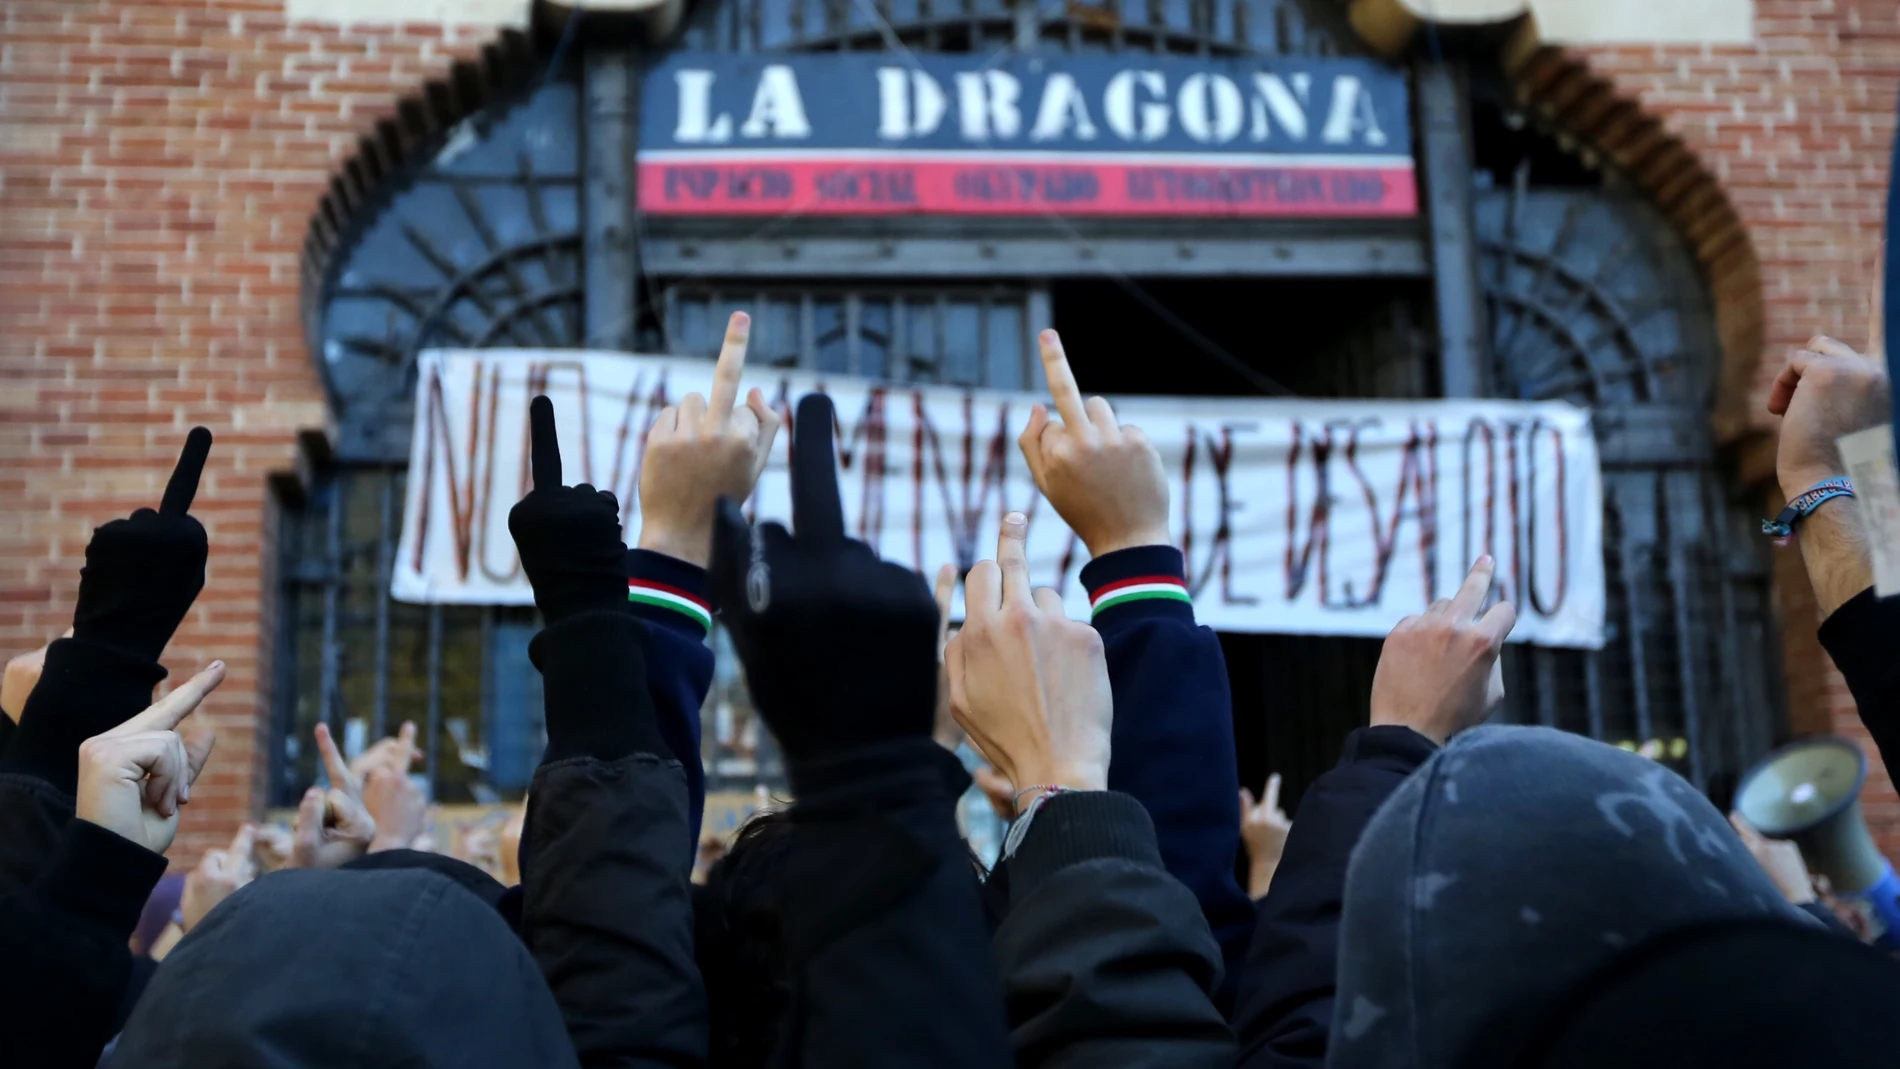 Protesta frente a un edificio okupado en Madrid